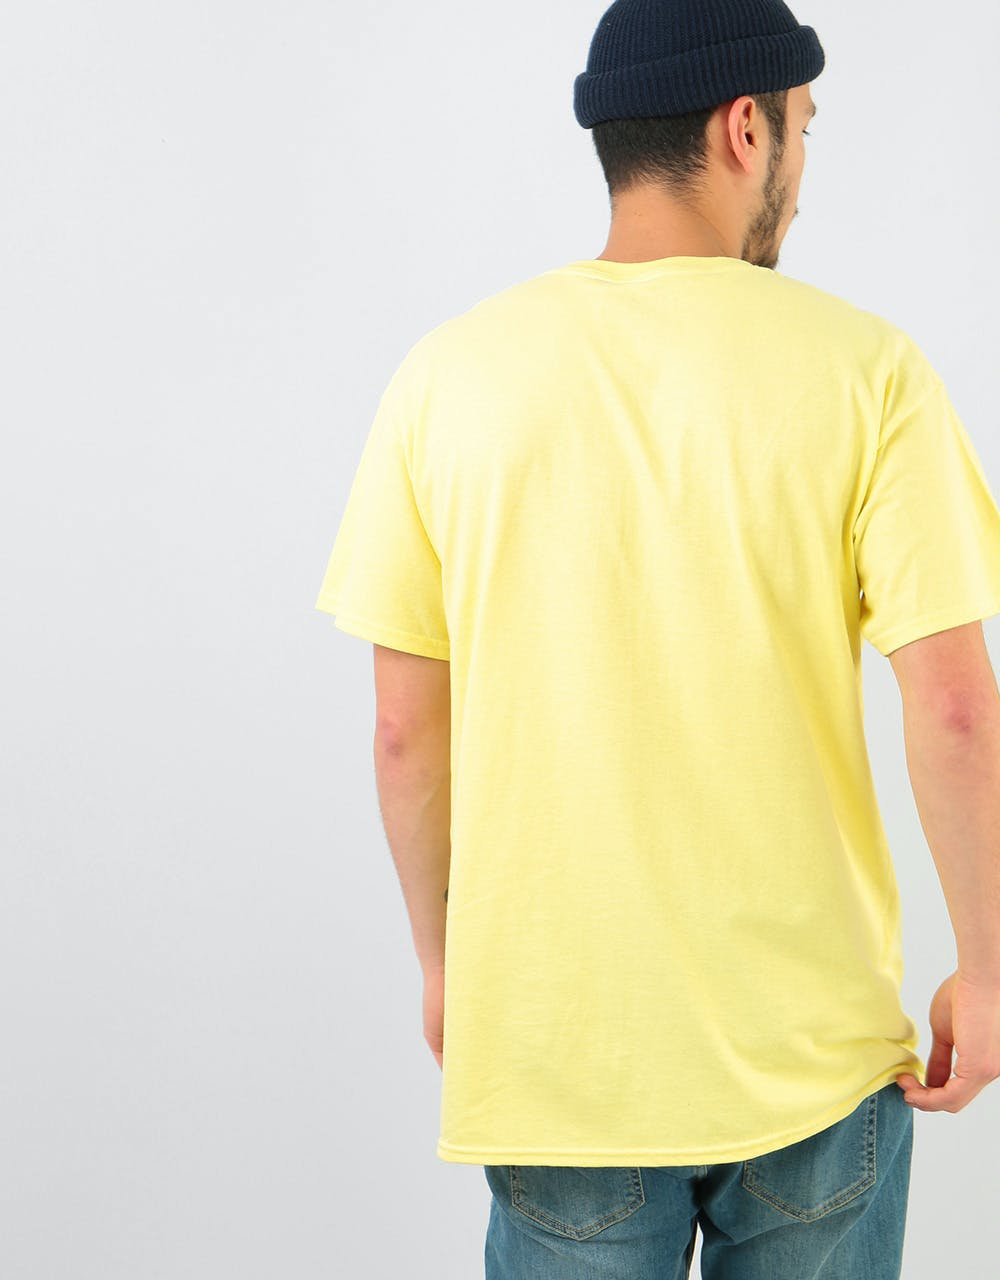 Lovenskate 'Skate Attack' T-Shirt - Pale Yellow